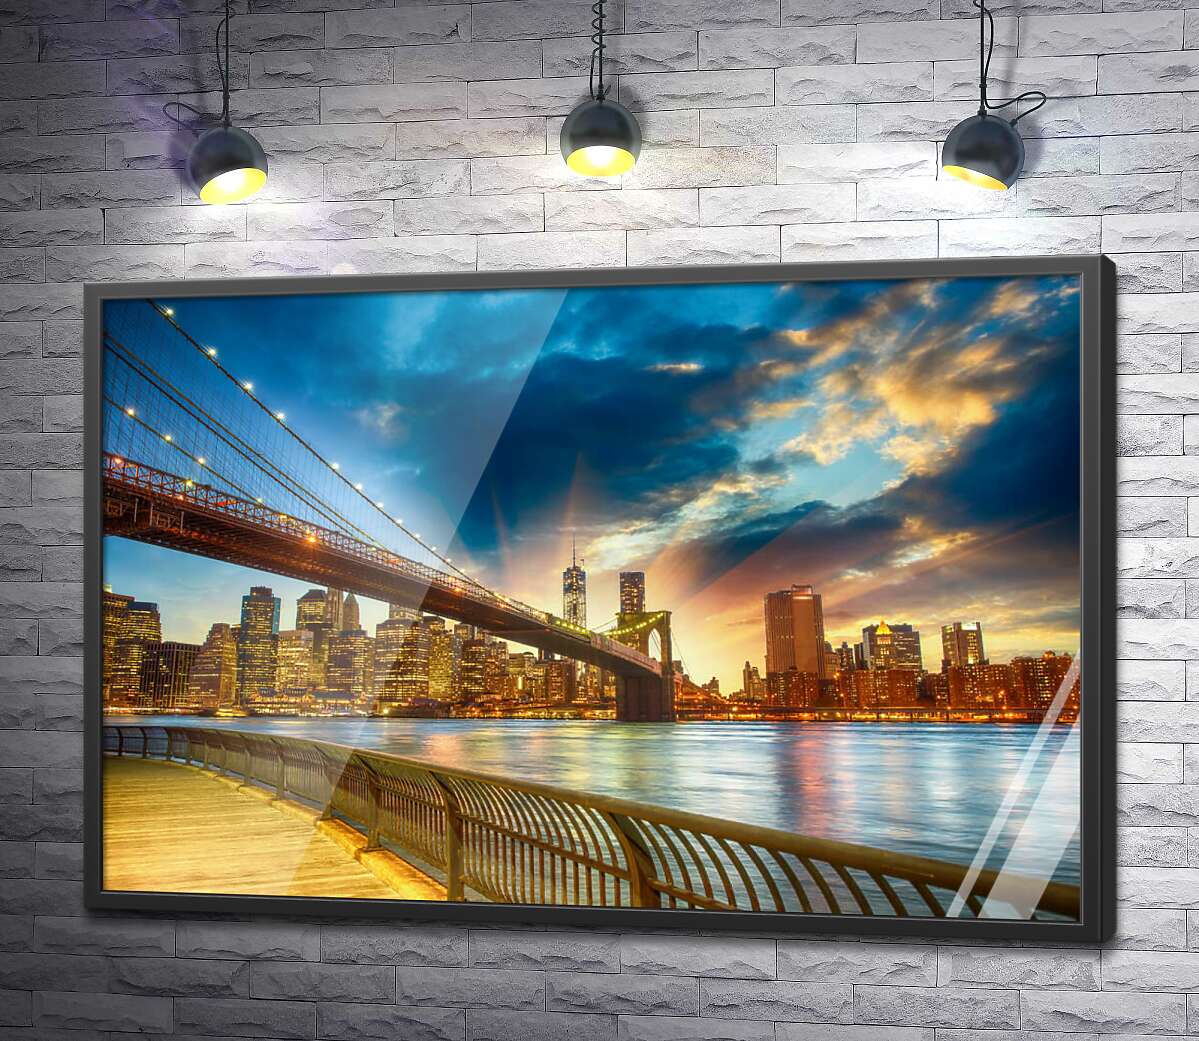 постер Бруклинский мост (Brooklyn Bridge) ведет к многолюдному мегаполису